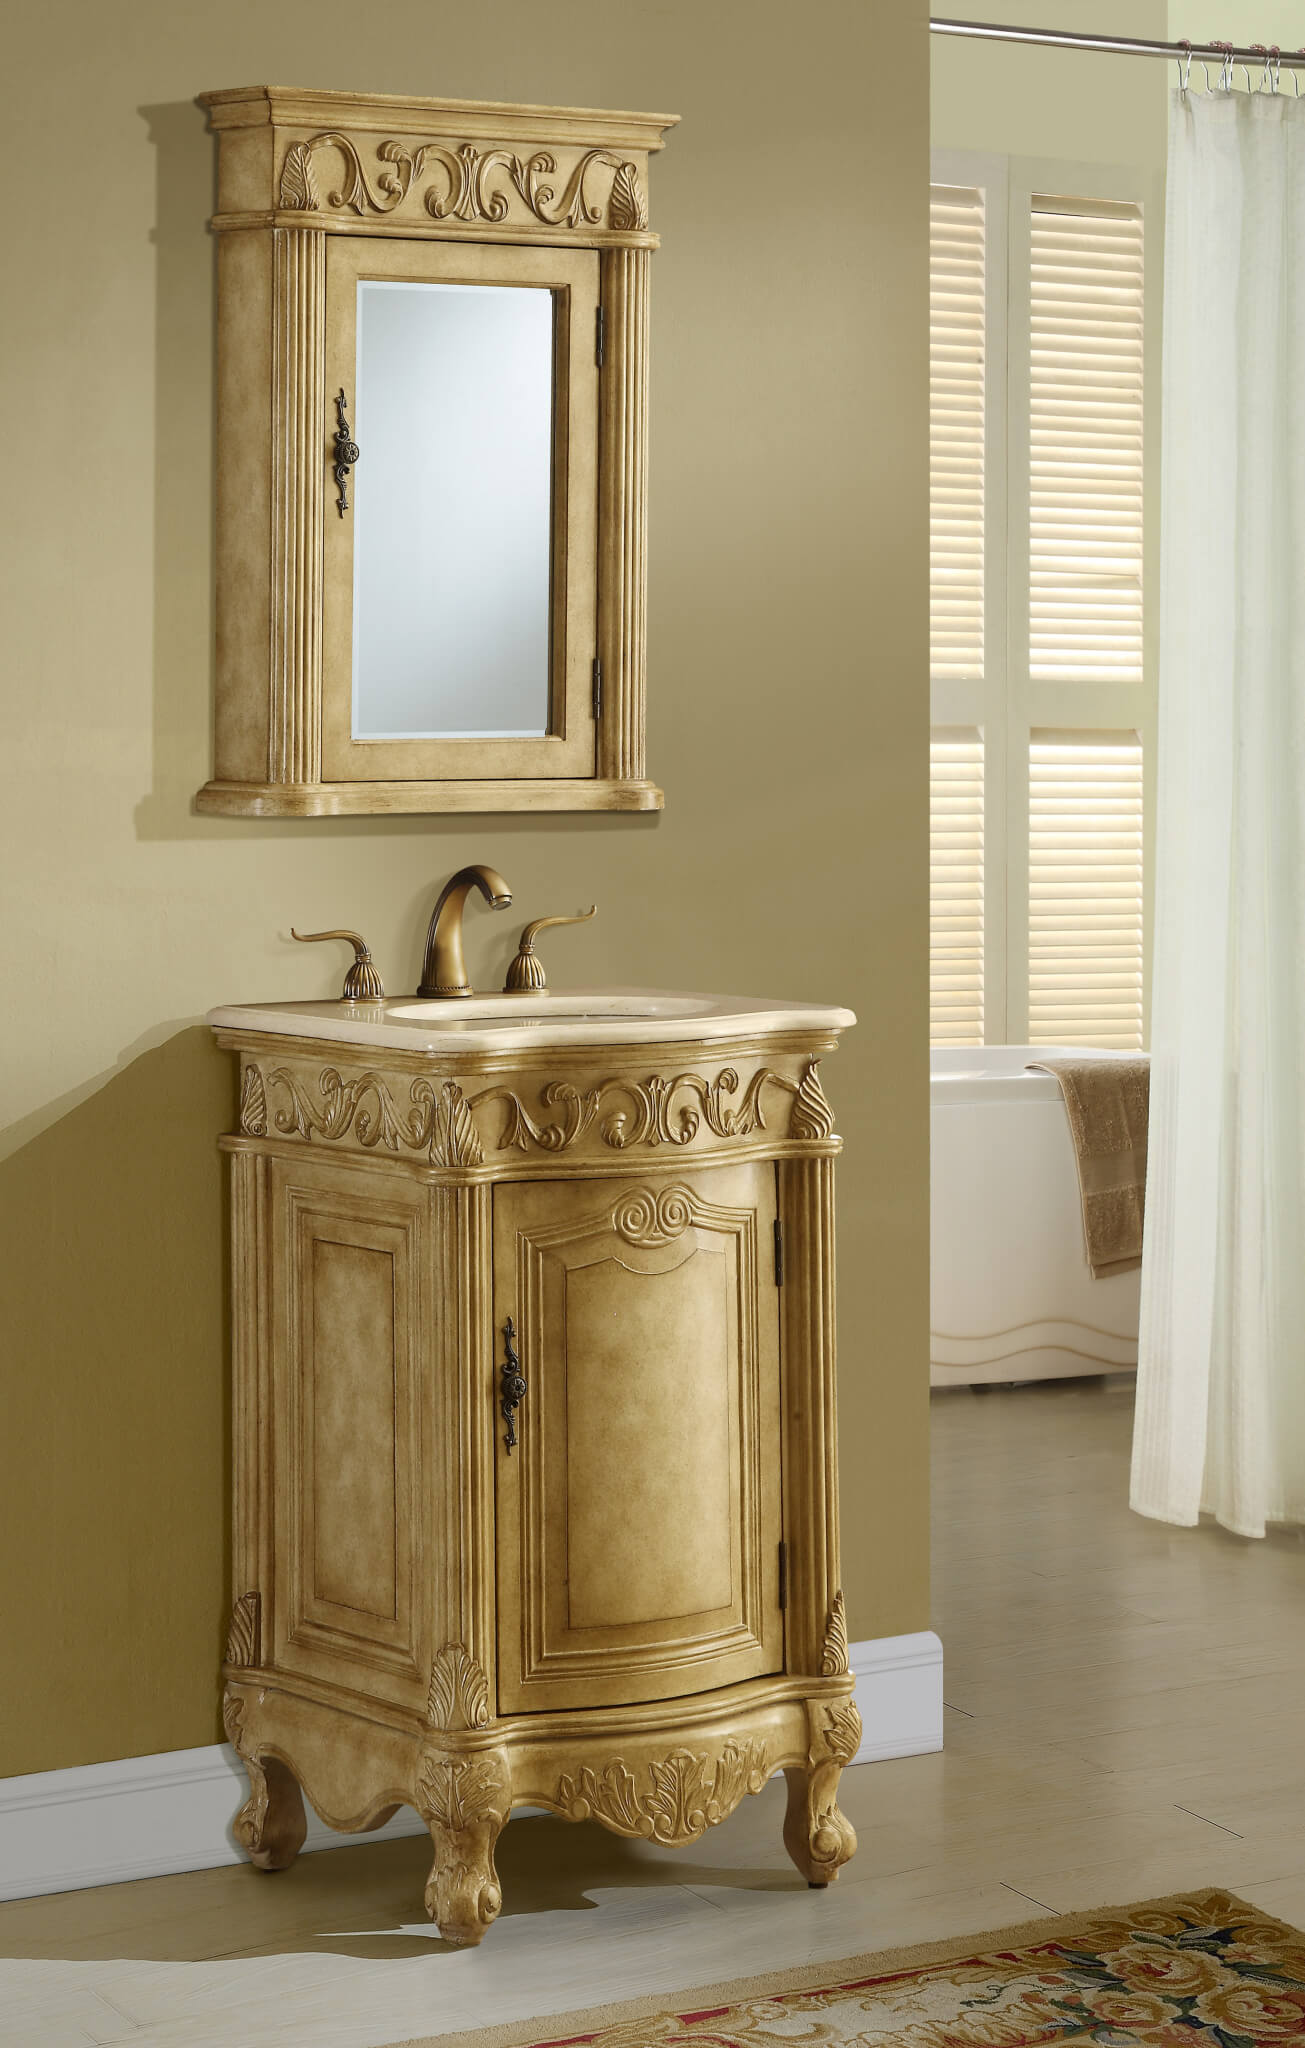 21in Antonia Vanity Space Saving Cabinet Antique Bathroom Vanity Traditional Style Vanity